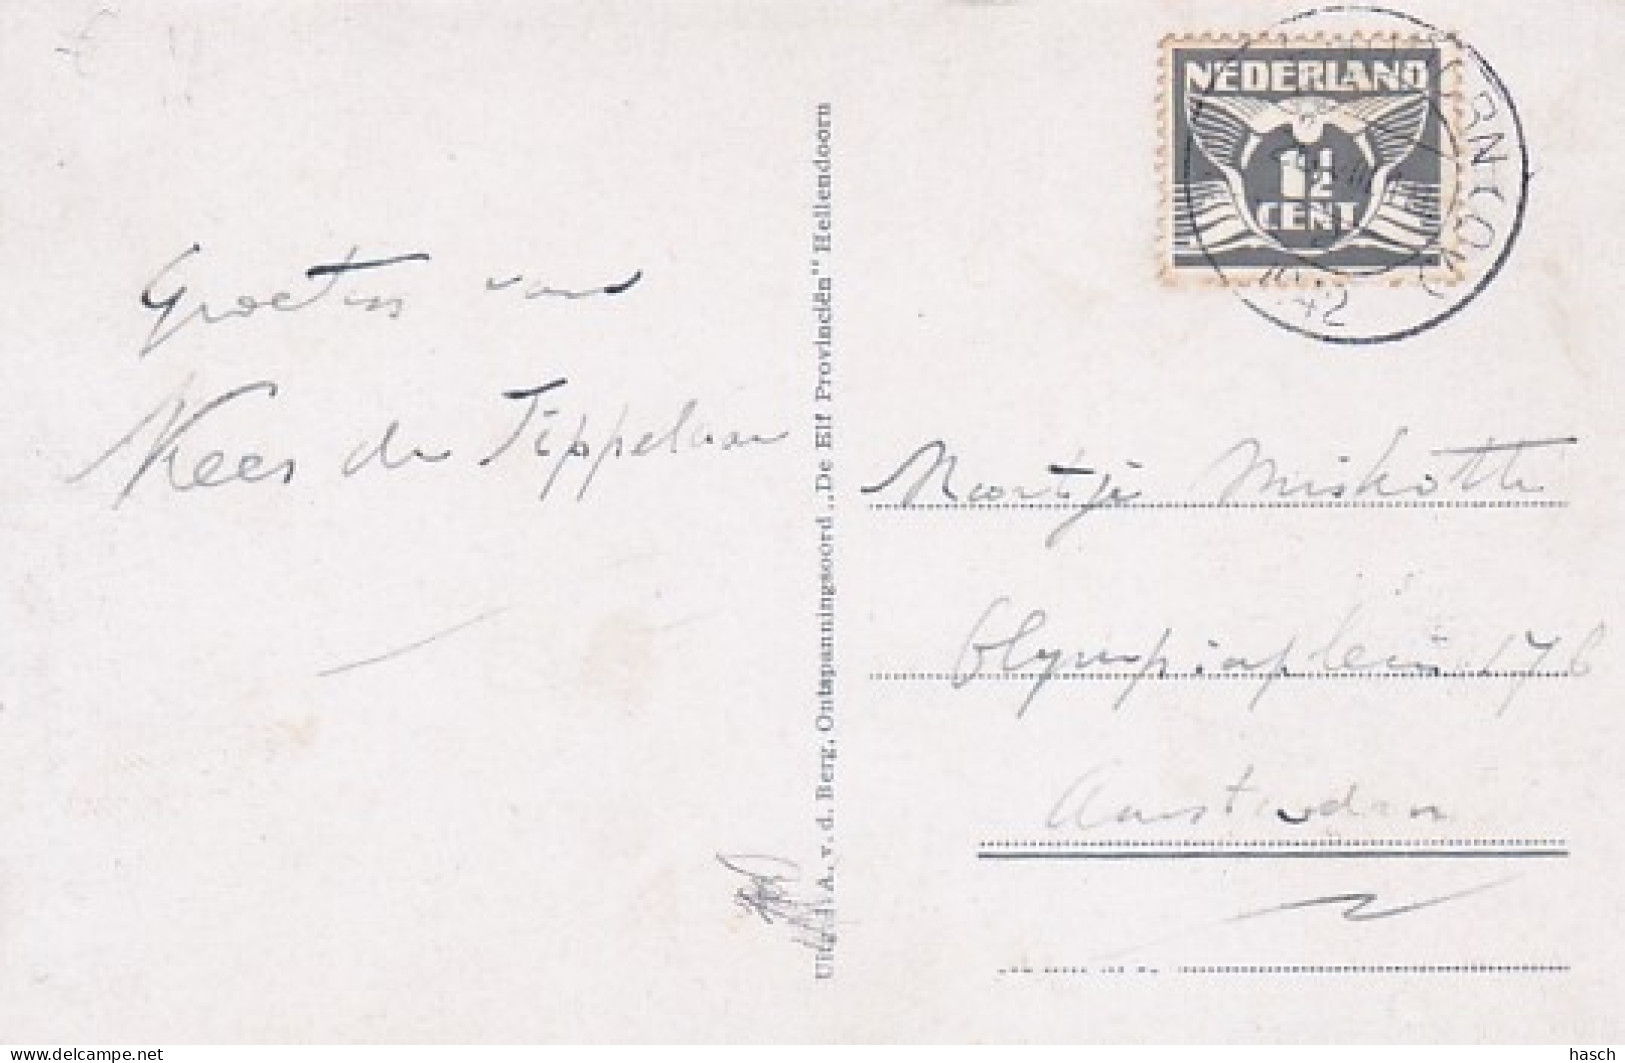 4822481Hellendoorn, Ontspanningsoord ,,De Elf Provinciën’’ J. A. V.d. Berg. 1942. - Hellendoorn